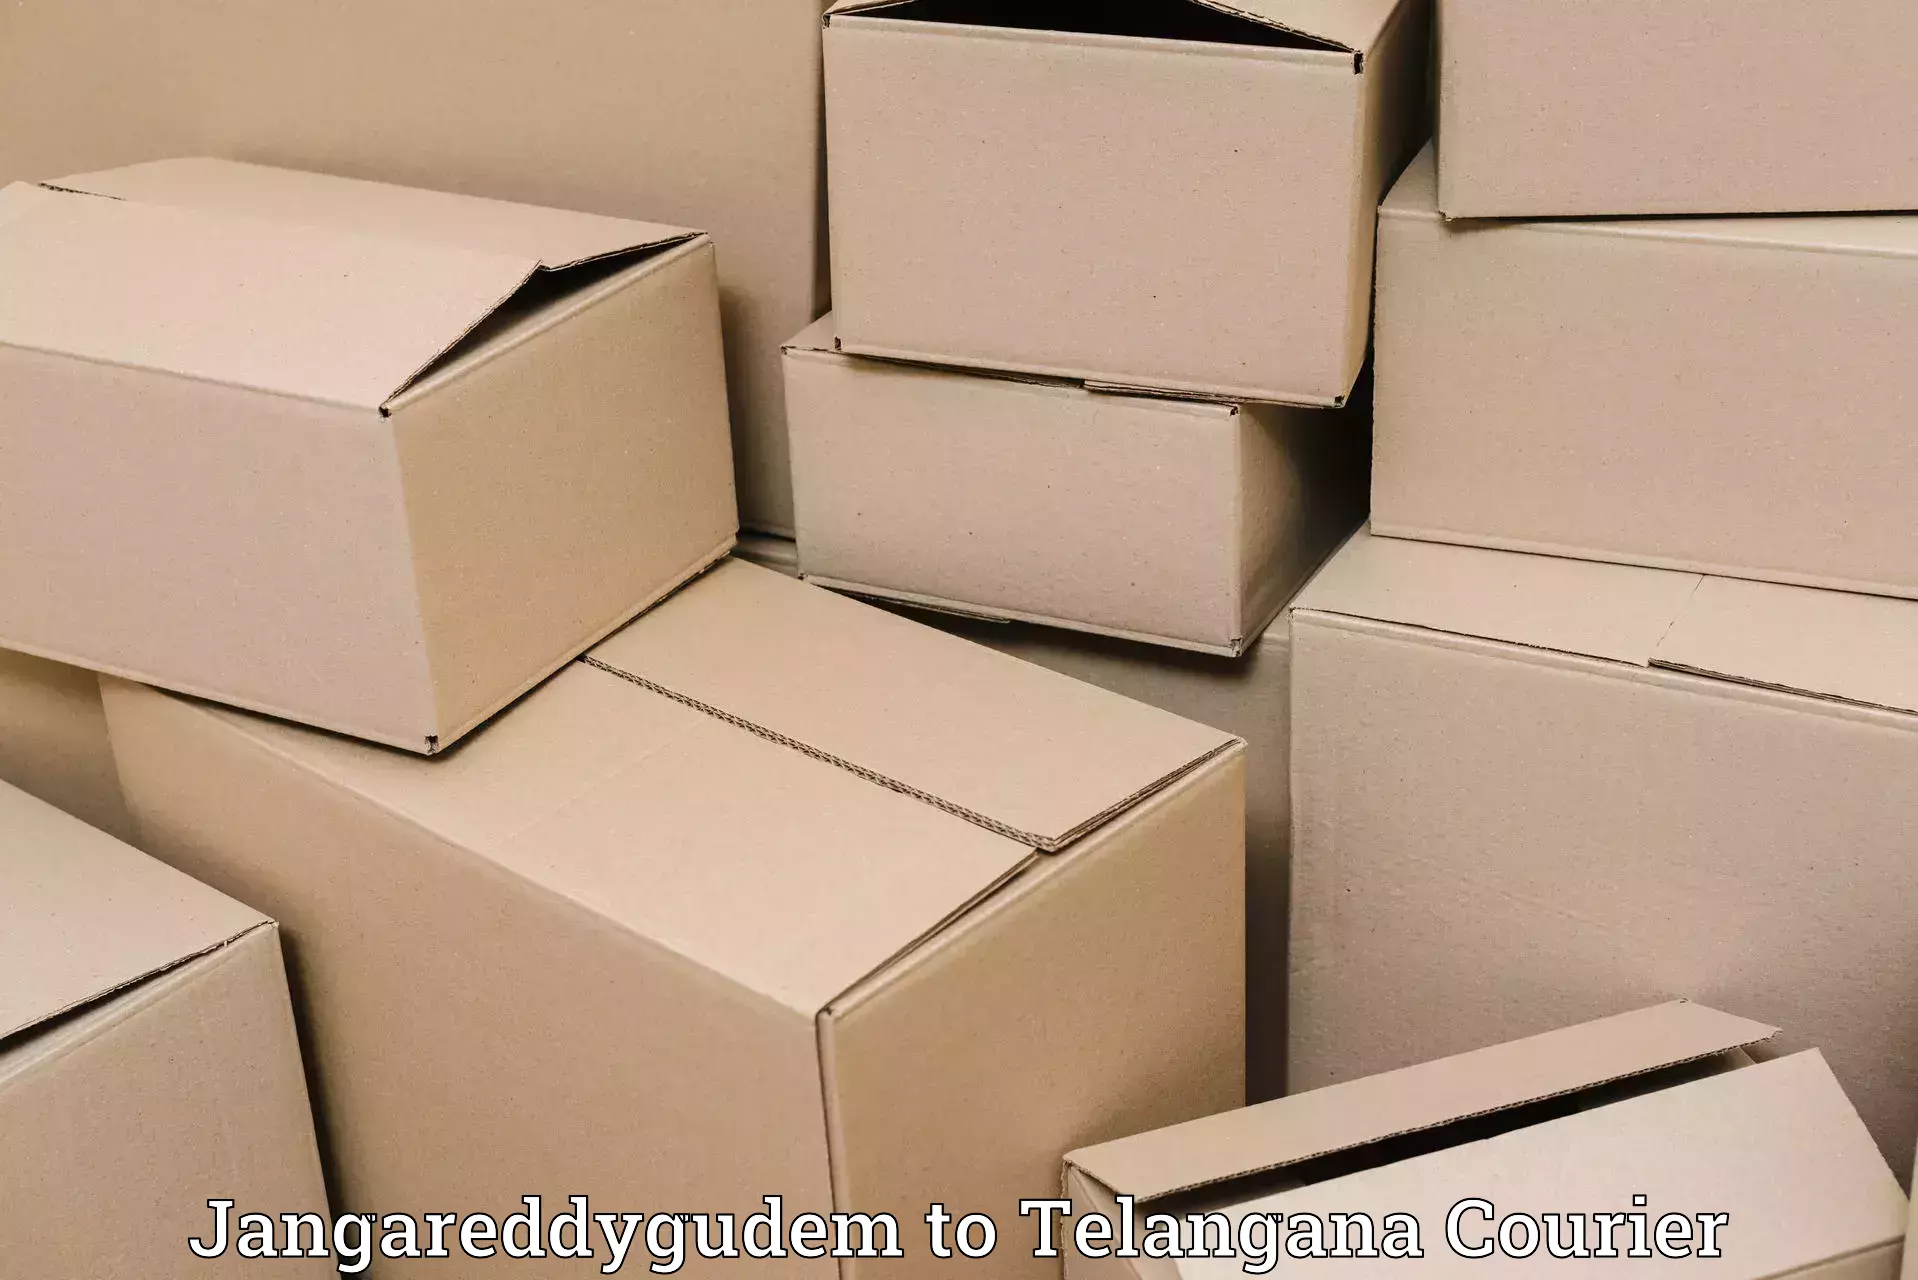 Fastest parcel delivery Jangareddygudem to Bodhan